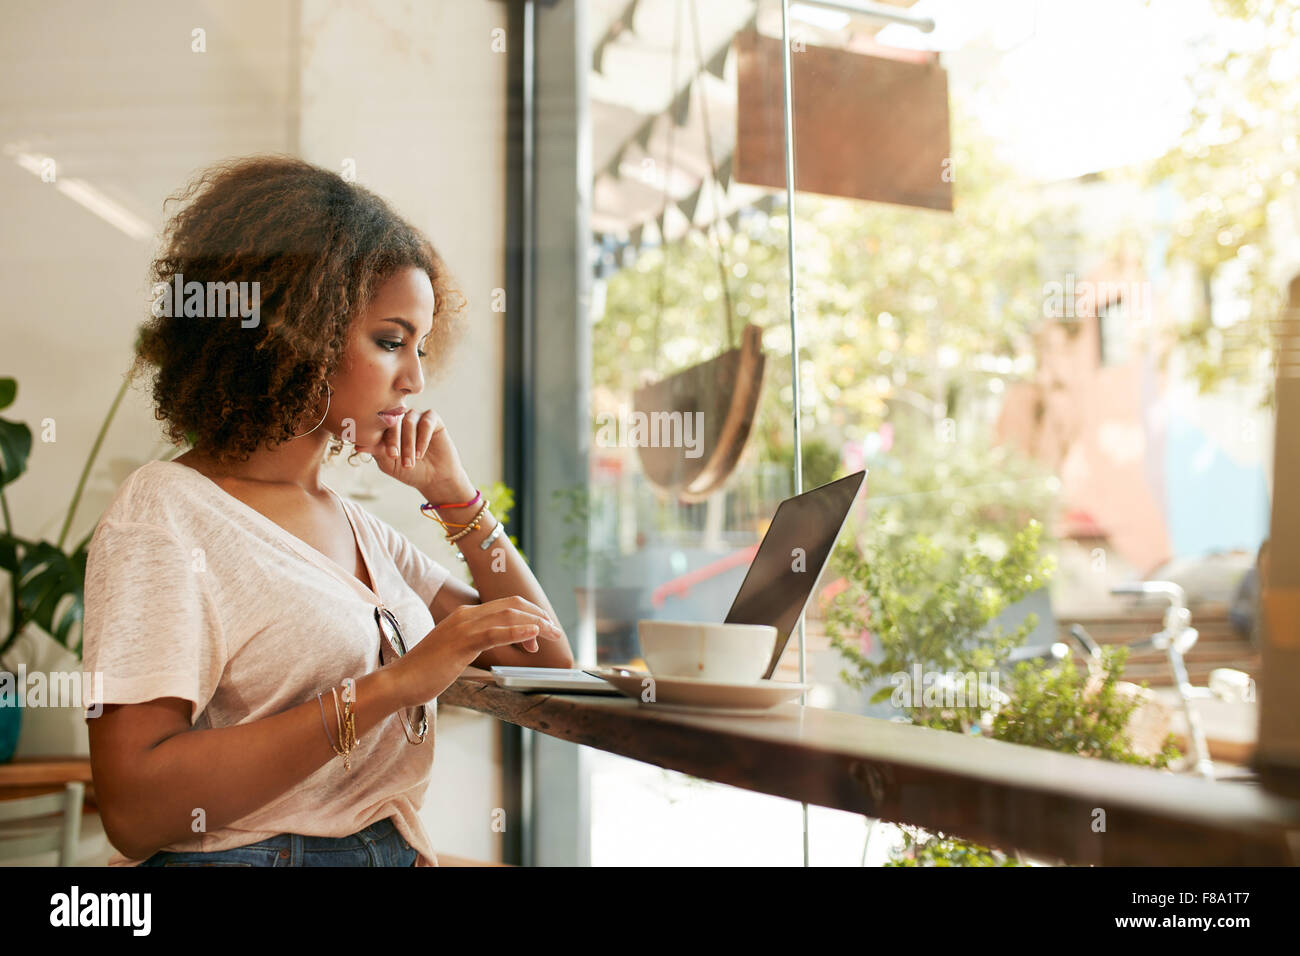 Junge schwarze Hündin im Café mit Laptop. Afrikanische junge Frau in einem Restaurant beschäftigt, arbeiten an ihrem Laptop sitzen. Stockfoto